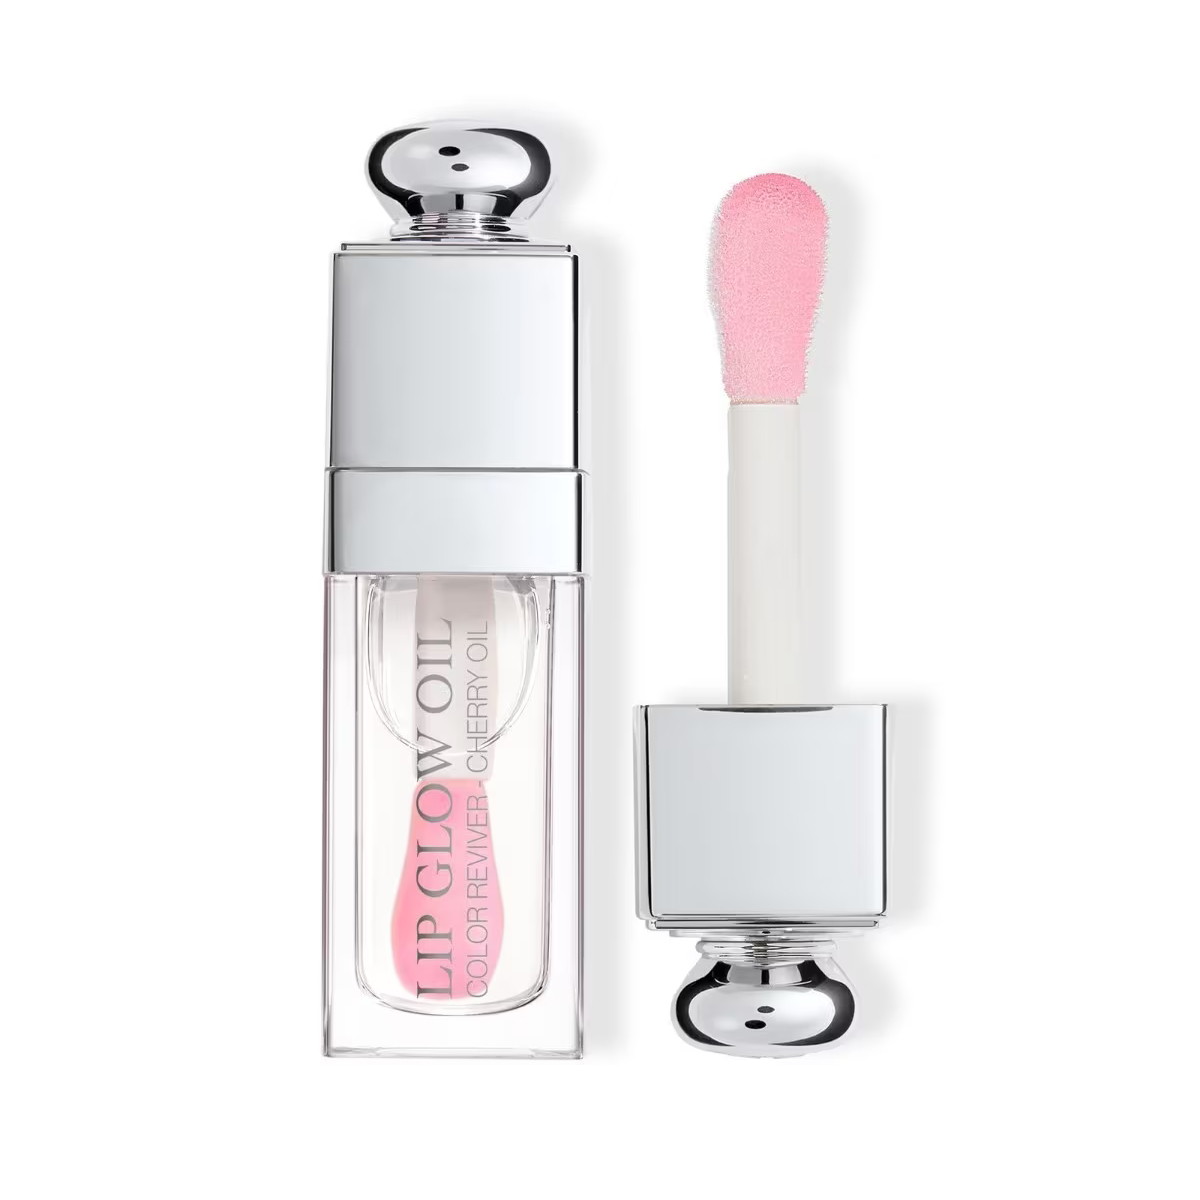 Масло для губ Dior Addict Lip Glow - 000 Universal Clear, 6 мл pacifica масло для губ glow stick бледный закат 0 14 унции 4 г